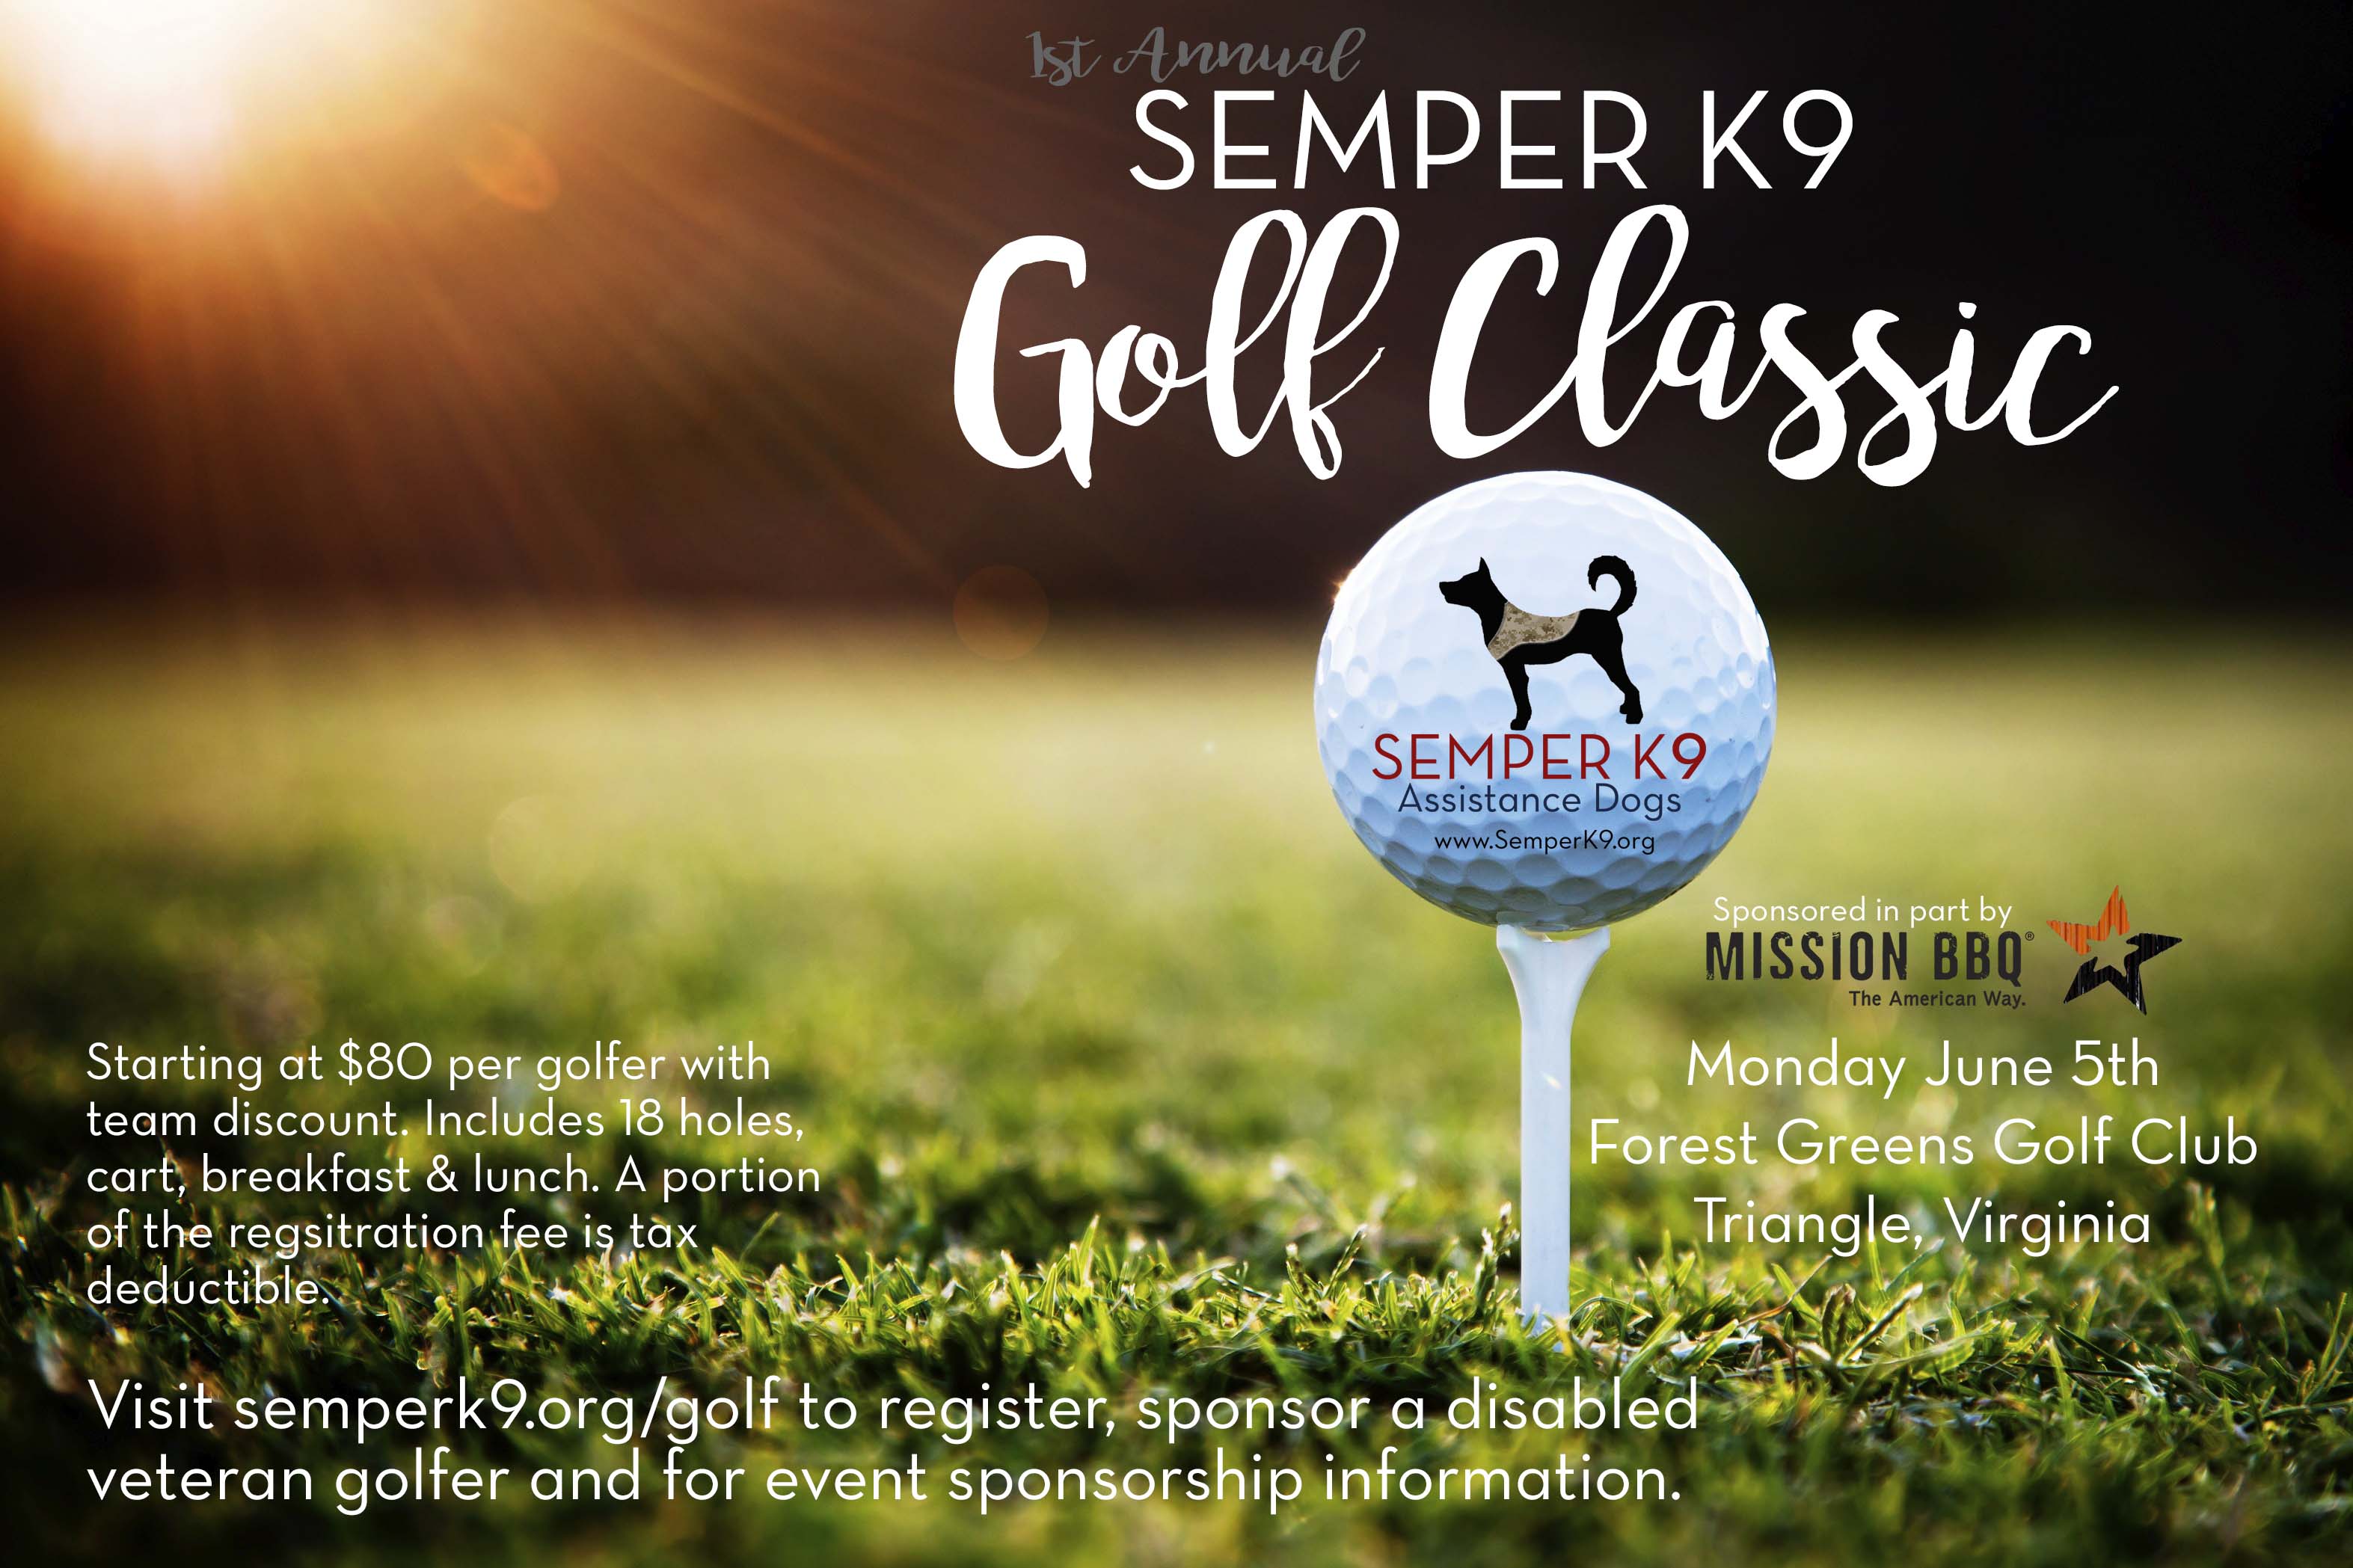 Semper K9 Golf Classic